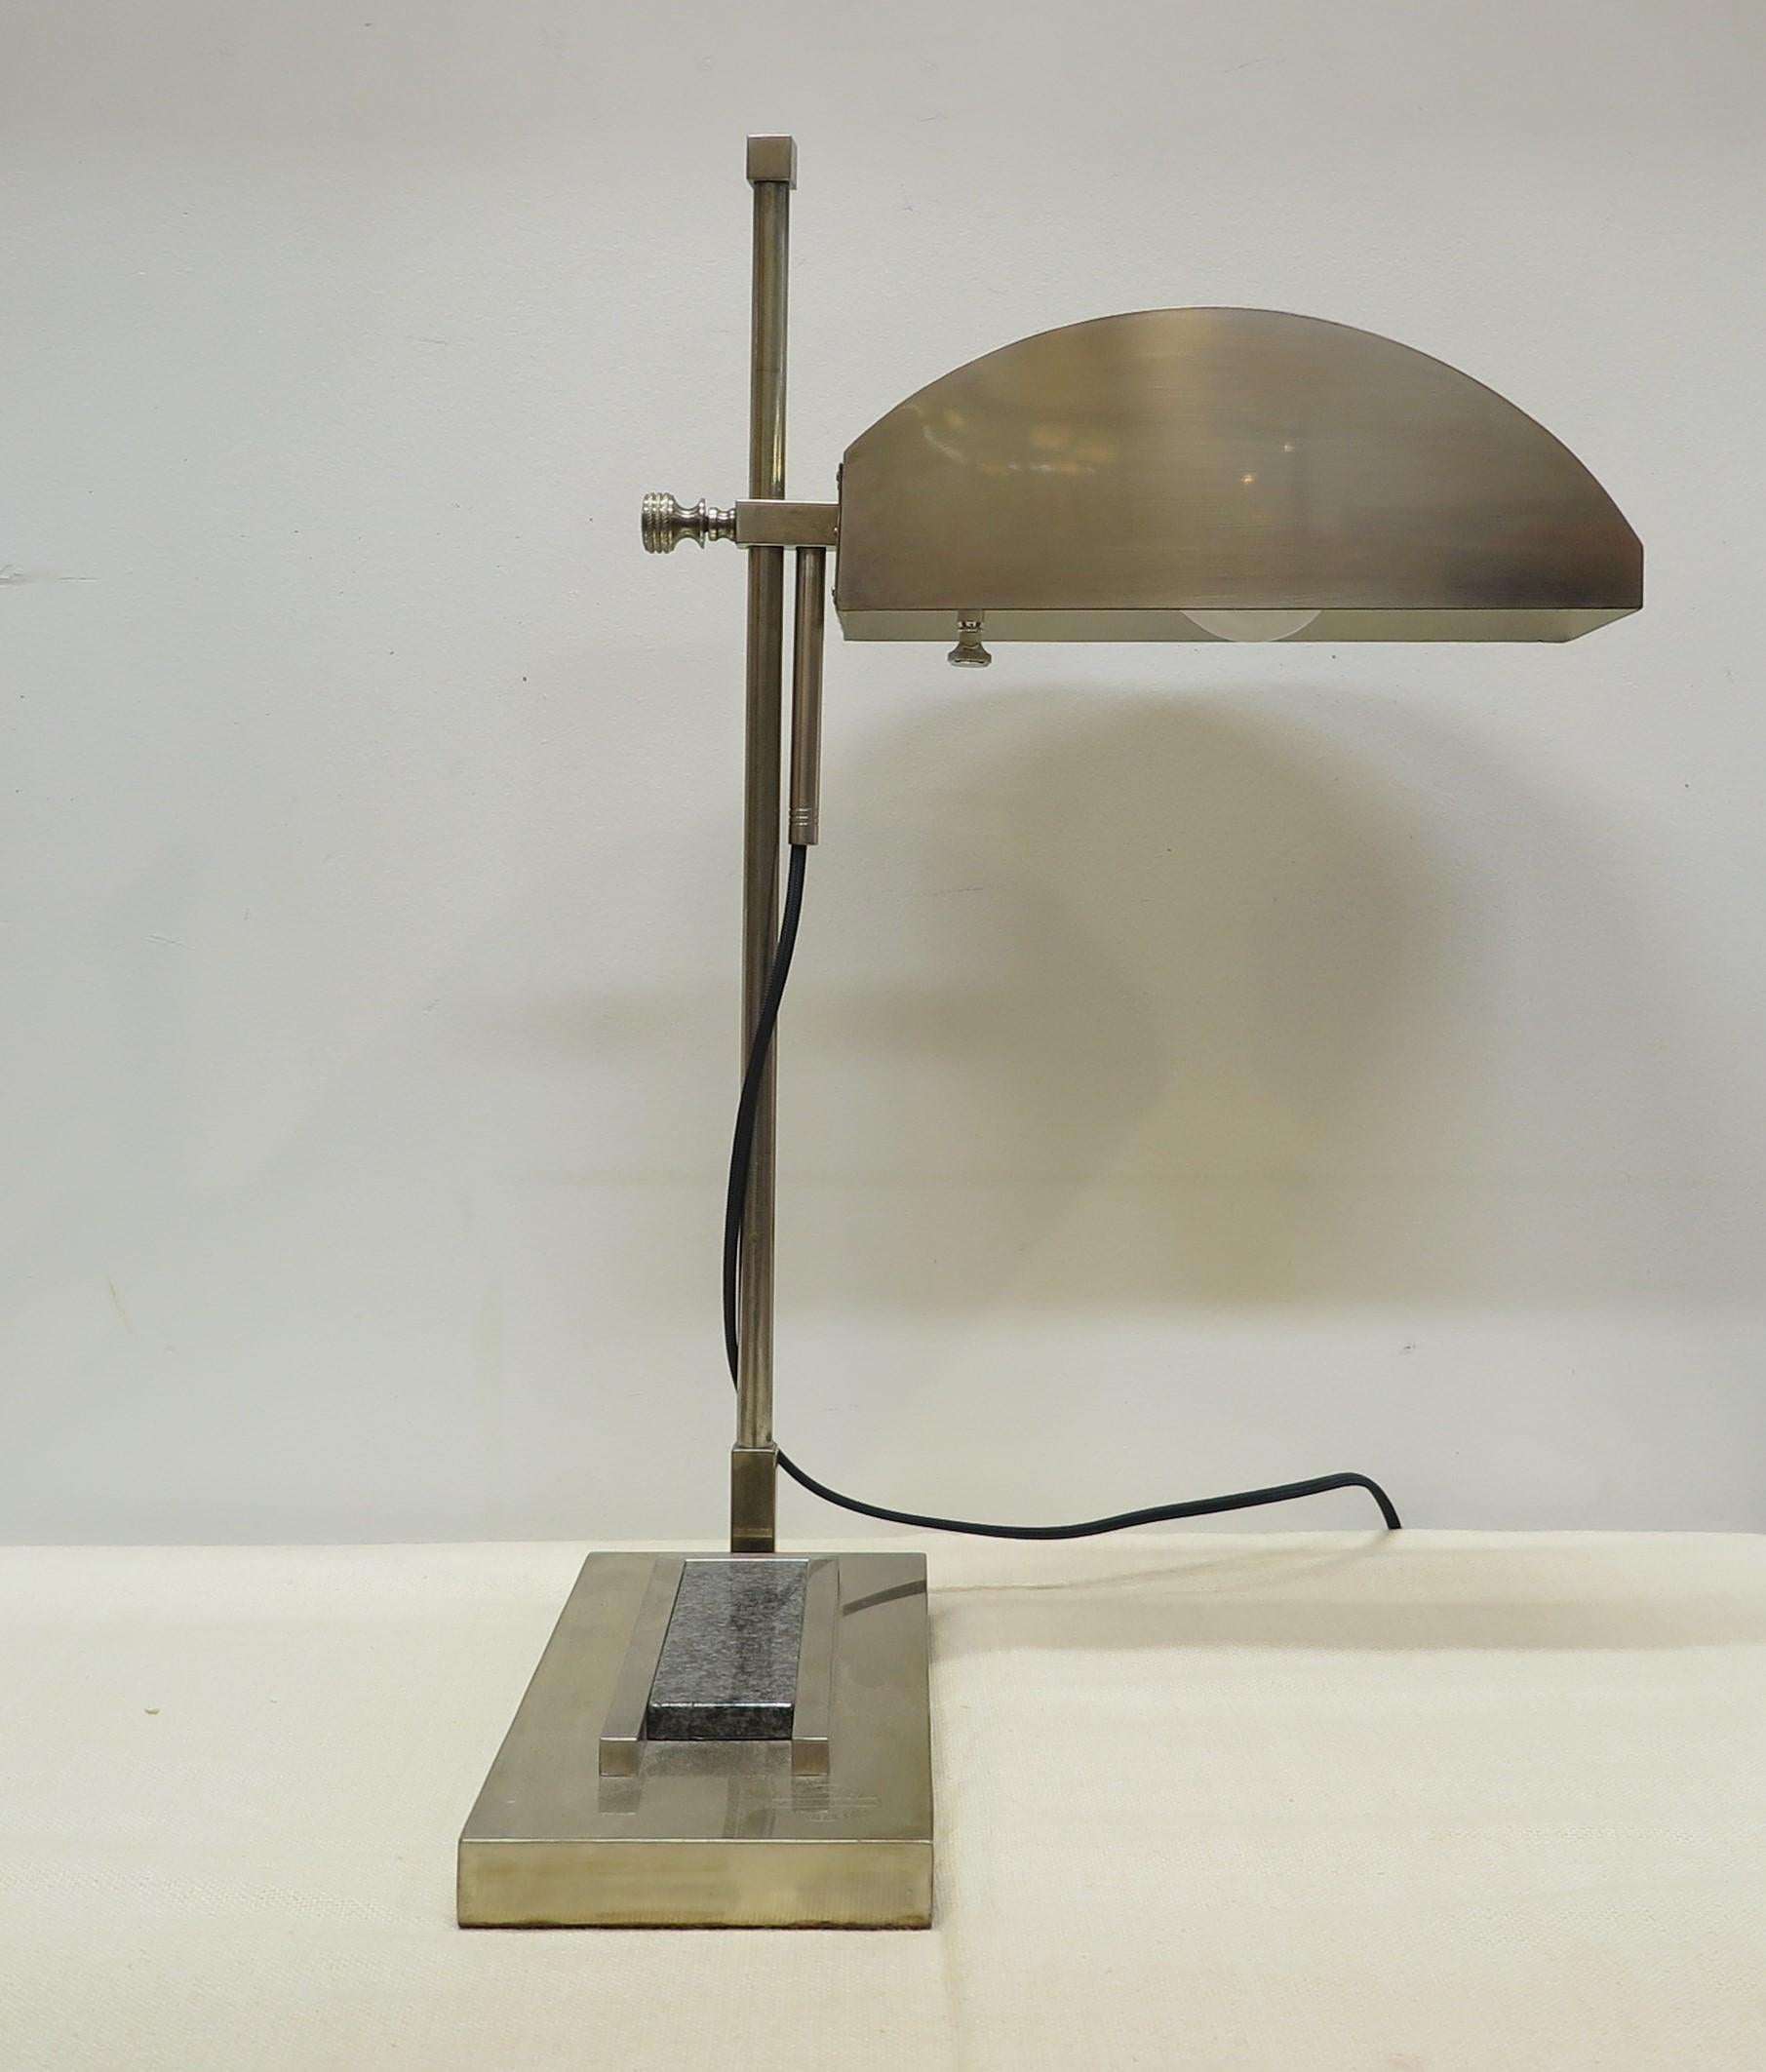 Bauhaus Articulating Schreibtischlampe von Marcel Breuer. Entworfen für die Internationale Ausstellung für moderne industrielle und dekorative Kunst in Paris 1925, Nummer 44 von 100. Gelenkige Auf- und Abwärtsbewegung mit voller 360°-Drehung.